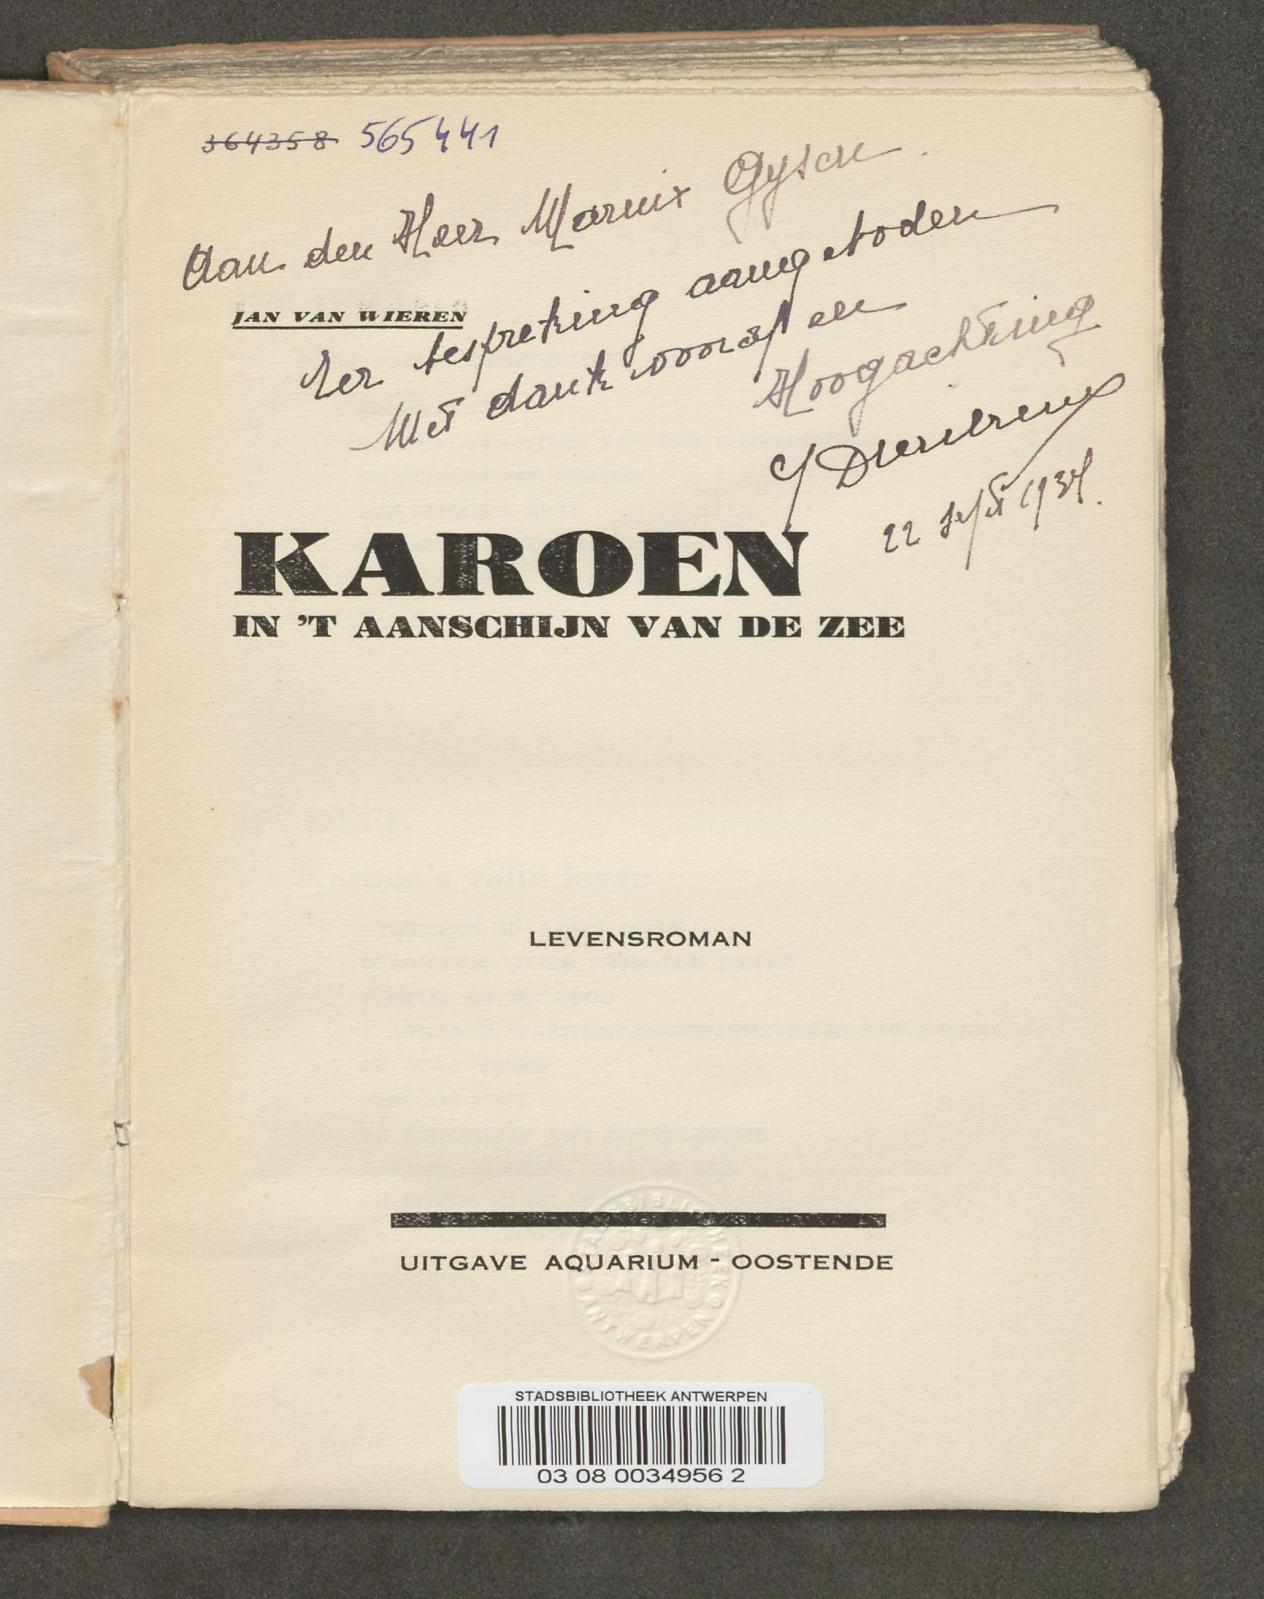 Gesigneerd exemplaar van Karoen, gericht aan Marnix Gijsen